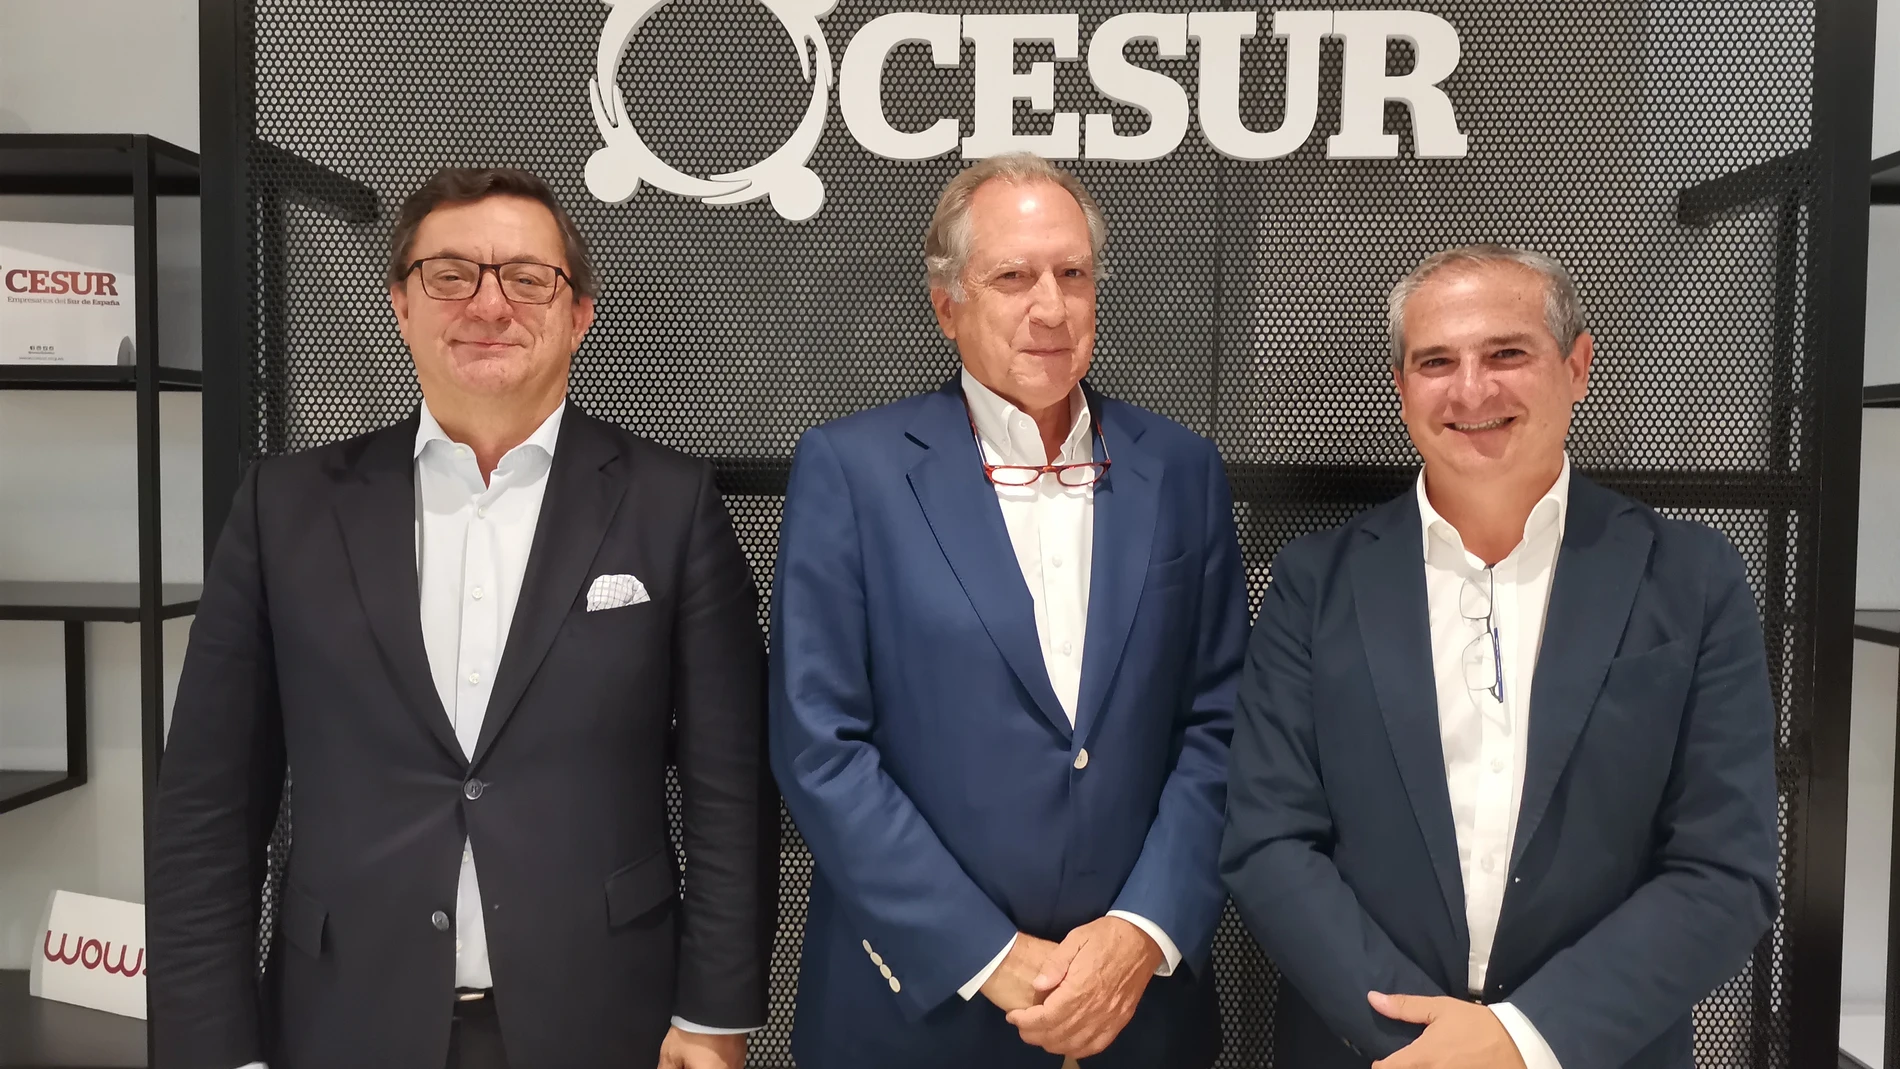 Cesur lanza un Centro de Innovación que une empresas, start ups y centros tecnológicos para el desarrollo empresarial